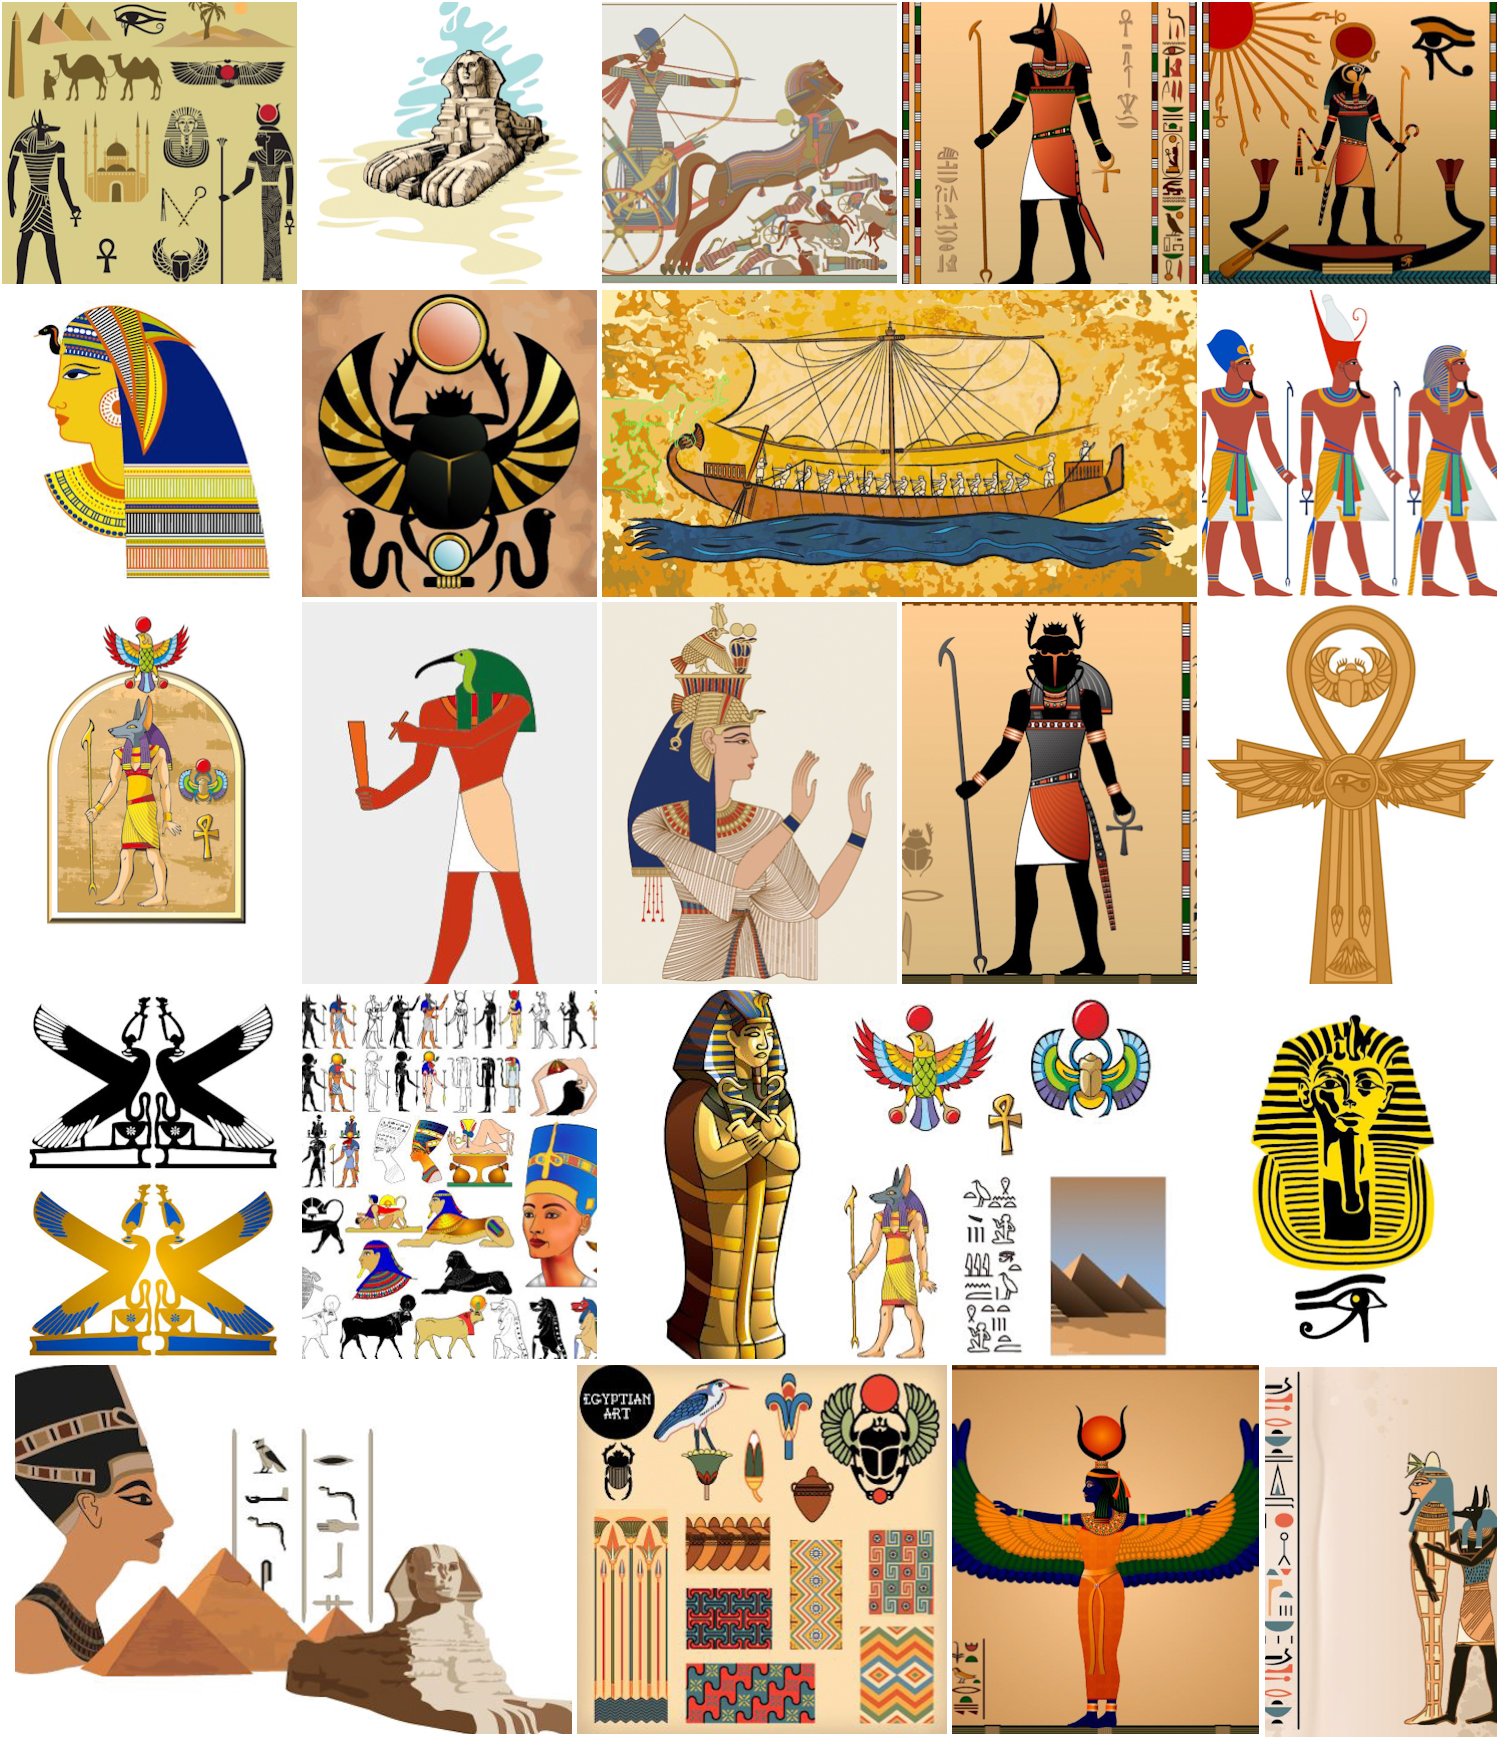 Egyptian theme